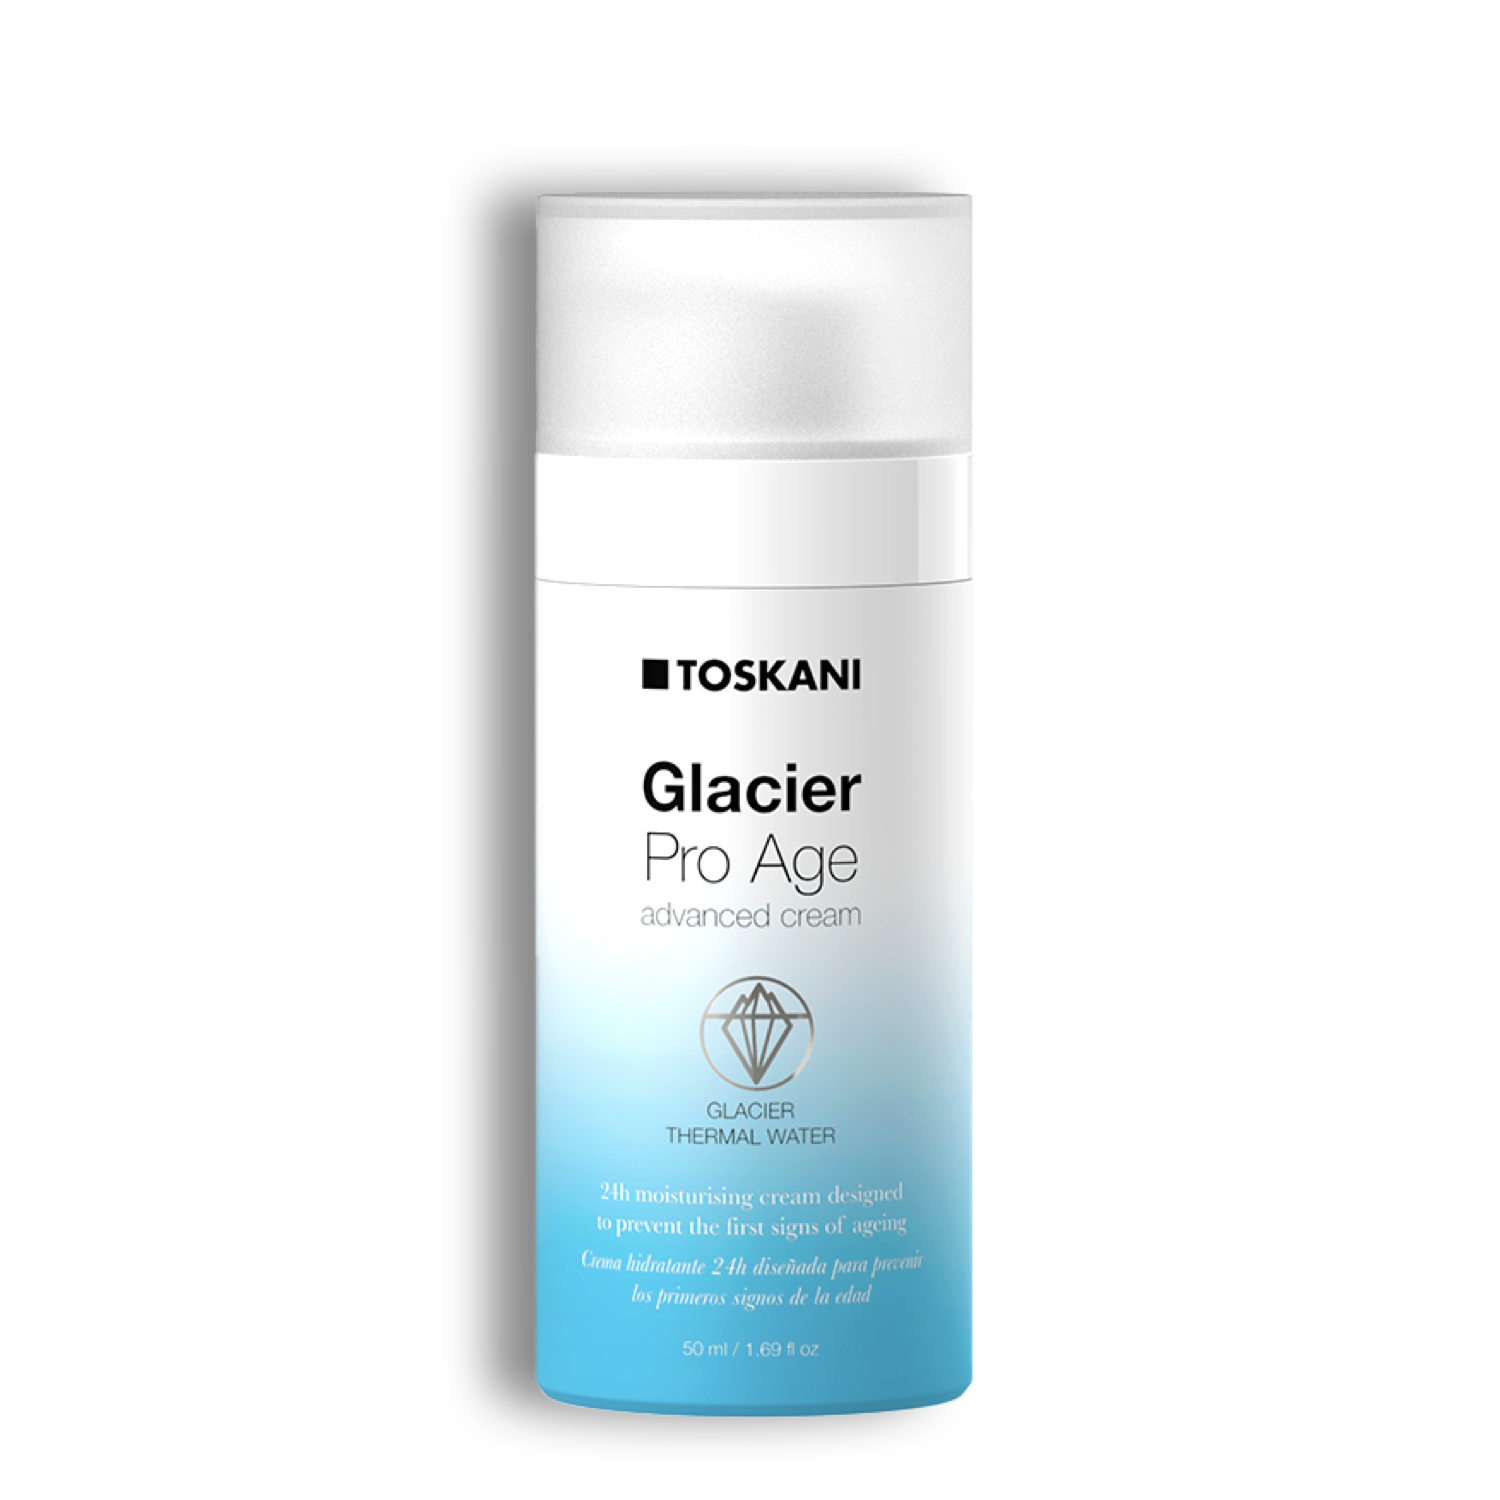 TOSKANI Glacier Pro Age Advanced Cream